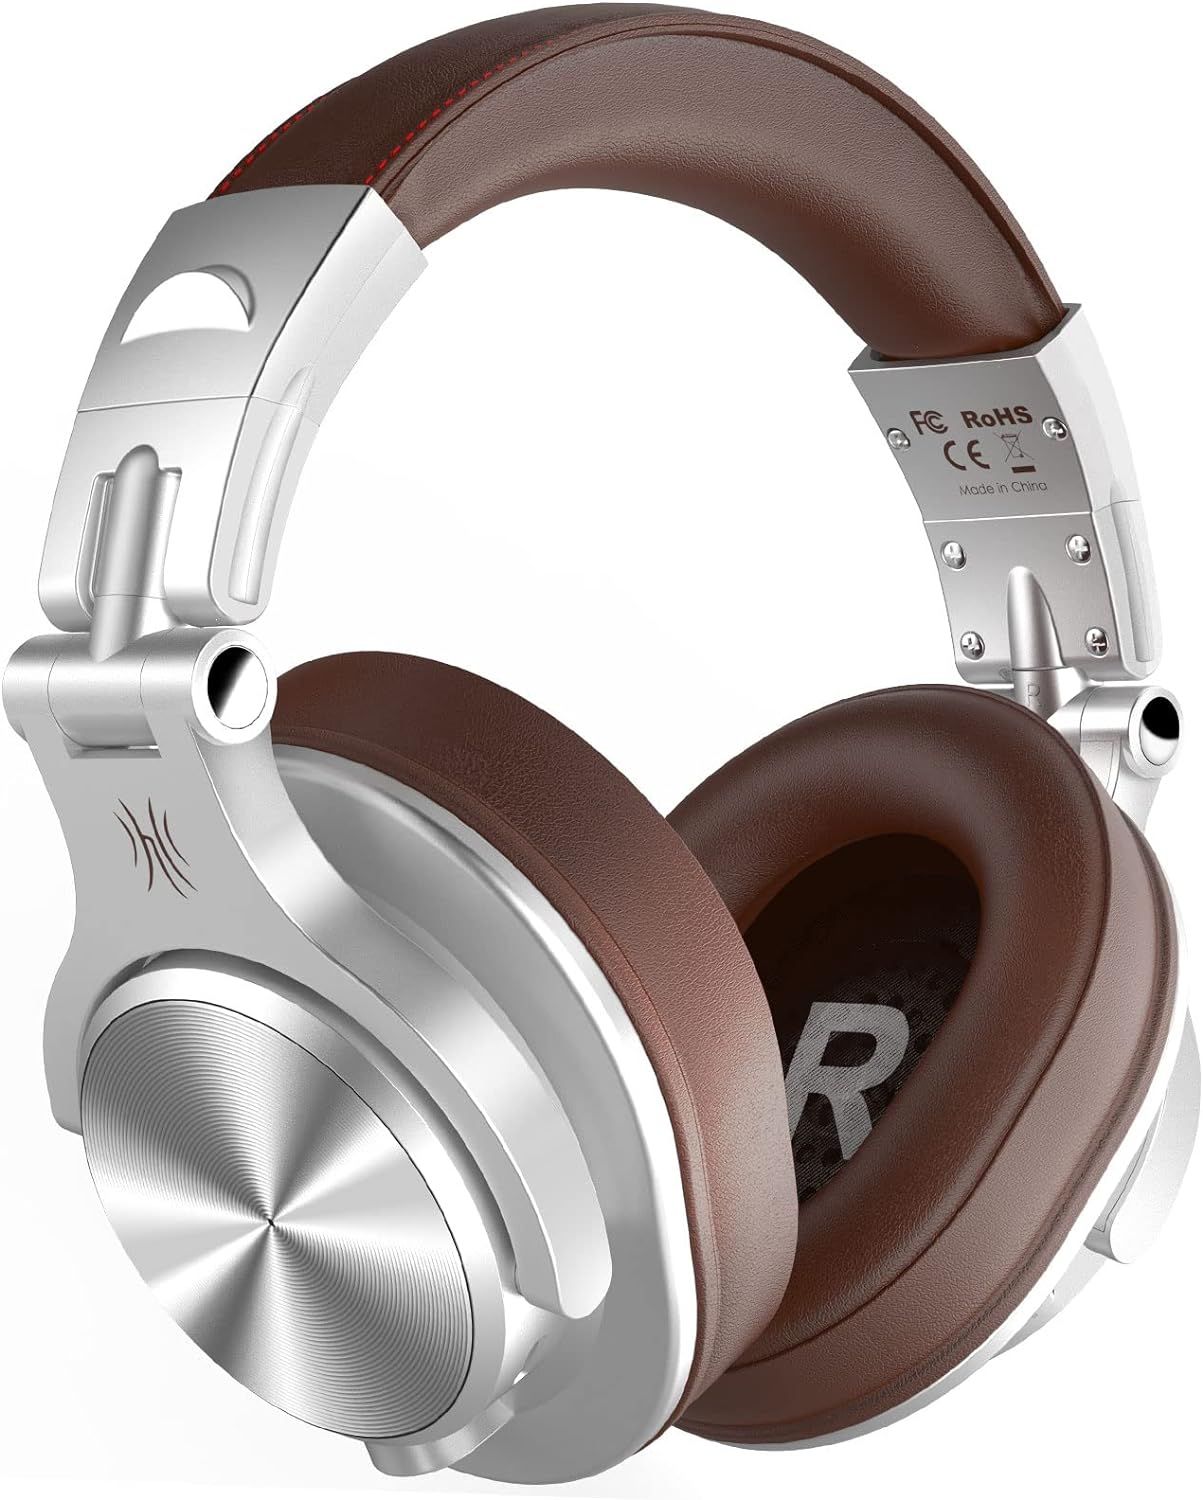 OneOdio A70 Headphones